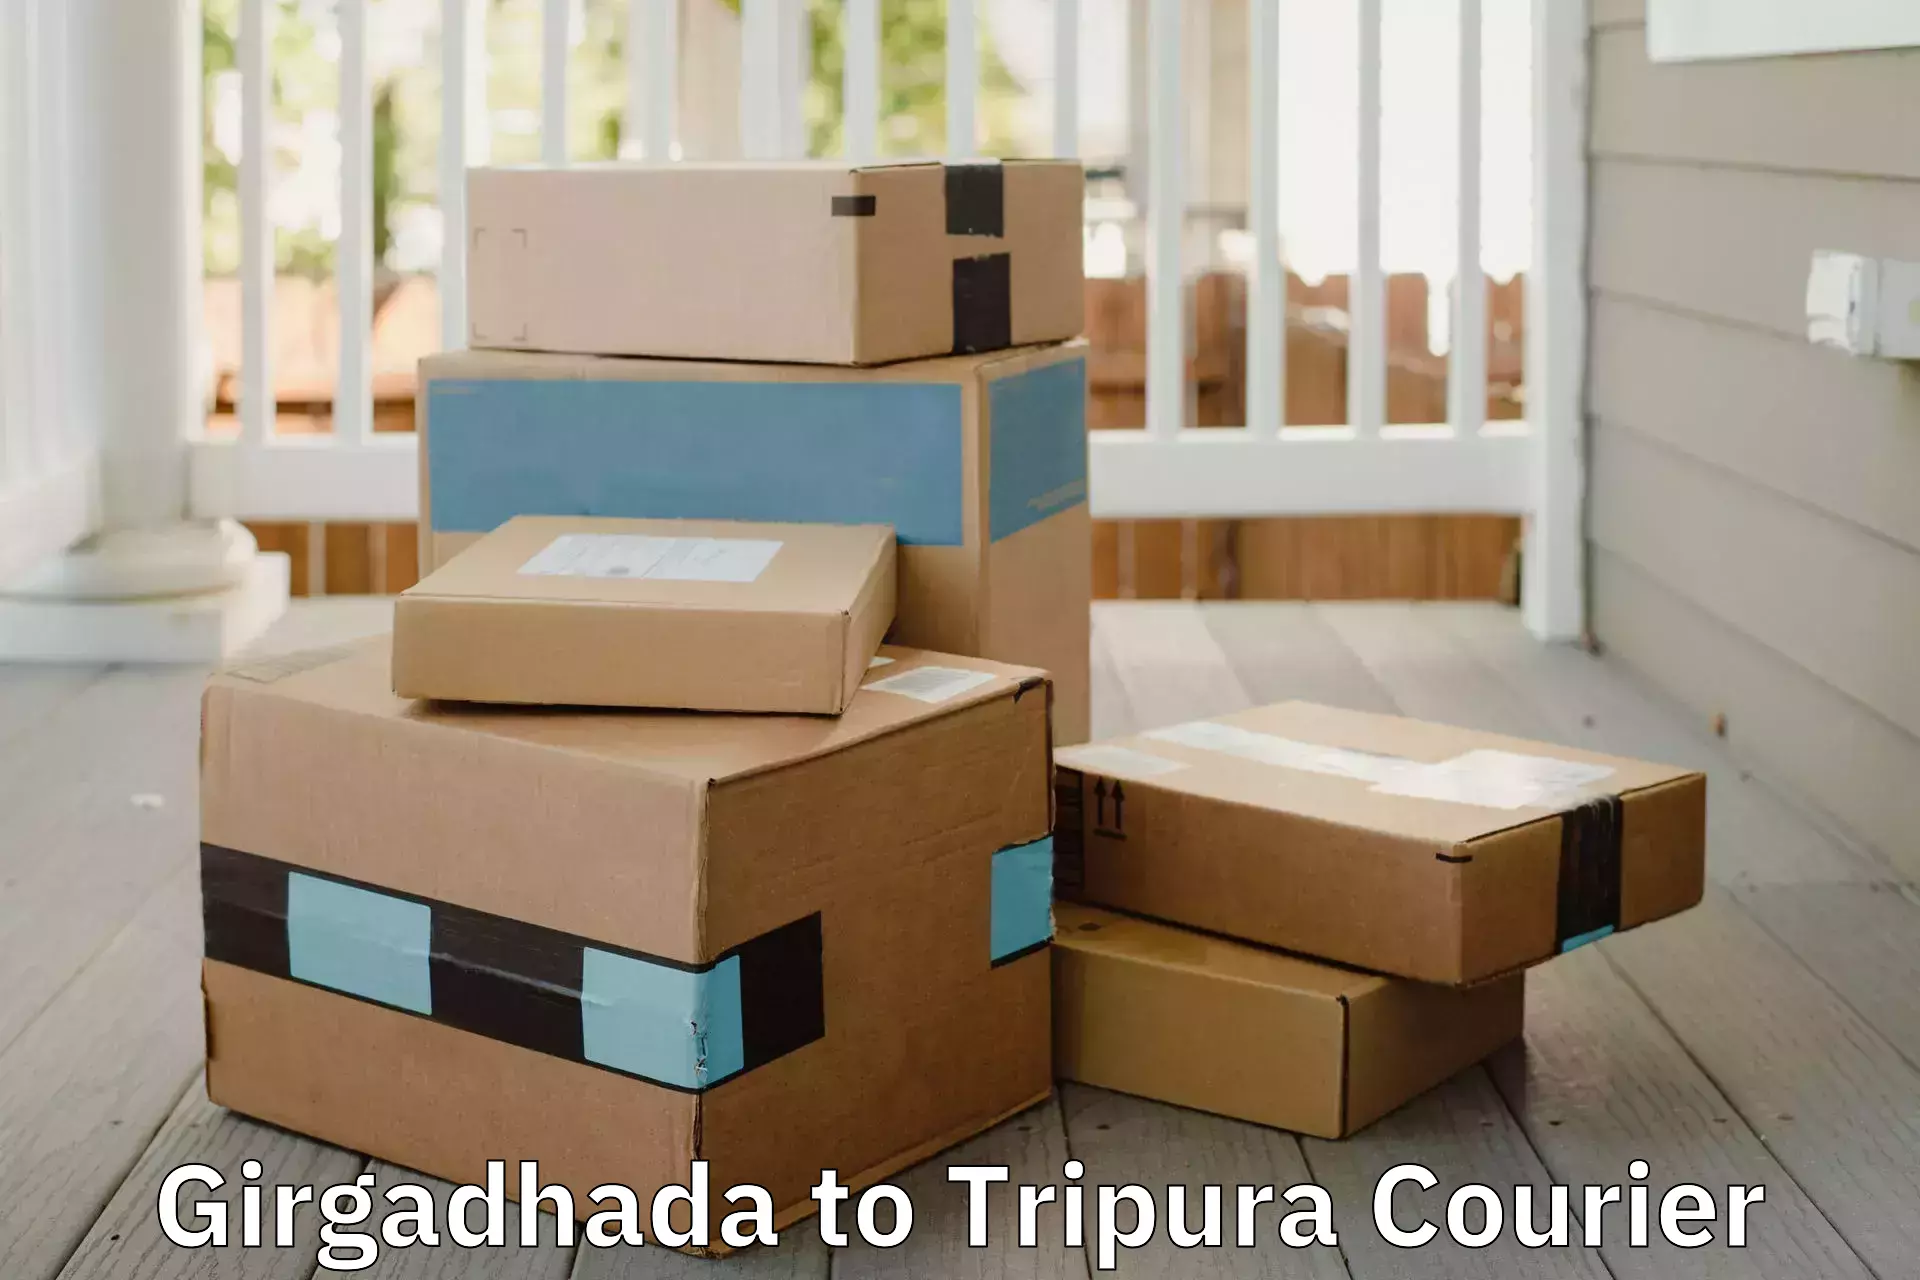 Door-to-door relocation services Girgadhada to Tripura